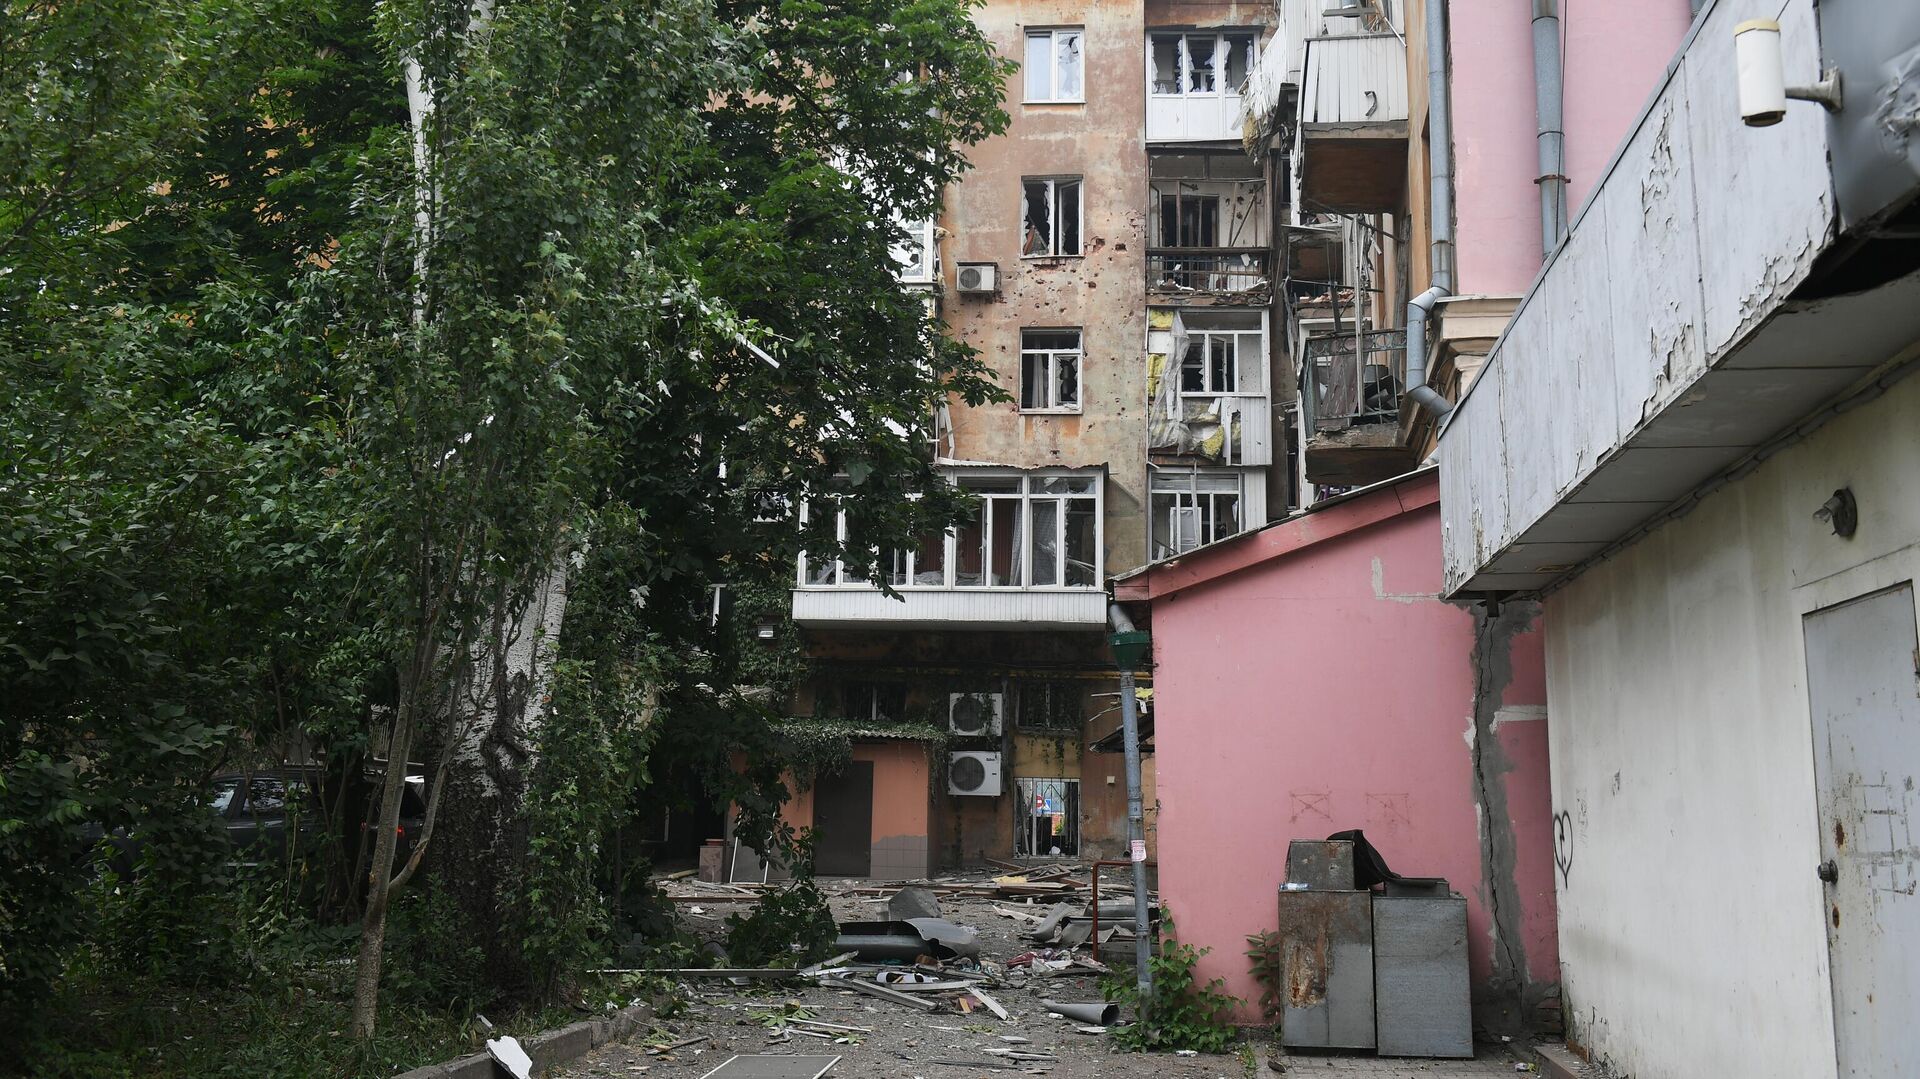 Жилой дом на Университетской улице в Ворошиловском районе Донецка, подвергшийся обстрелу - РИА Новости, 1920, 04.07.2022